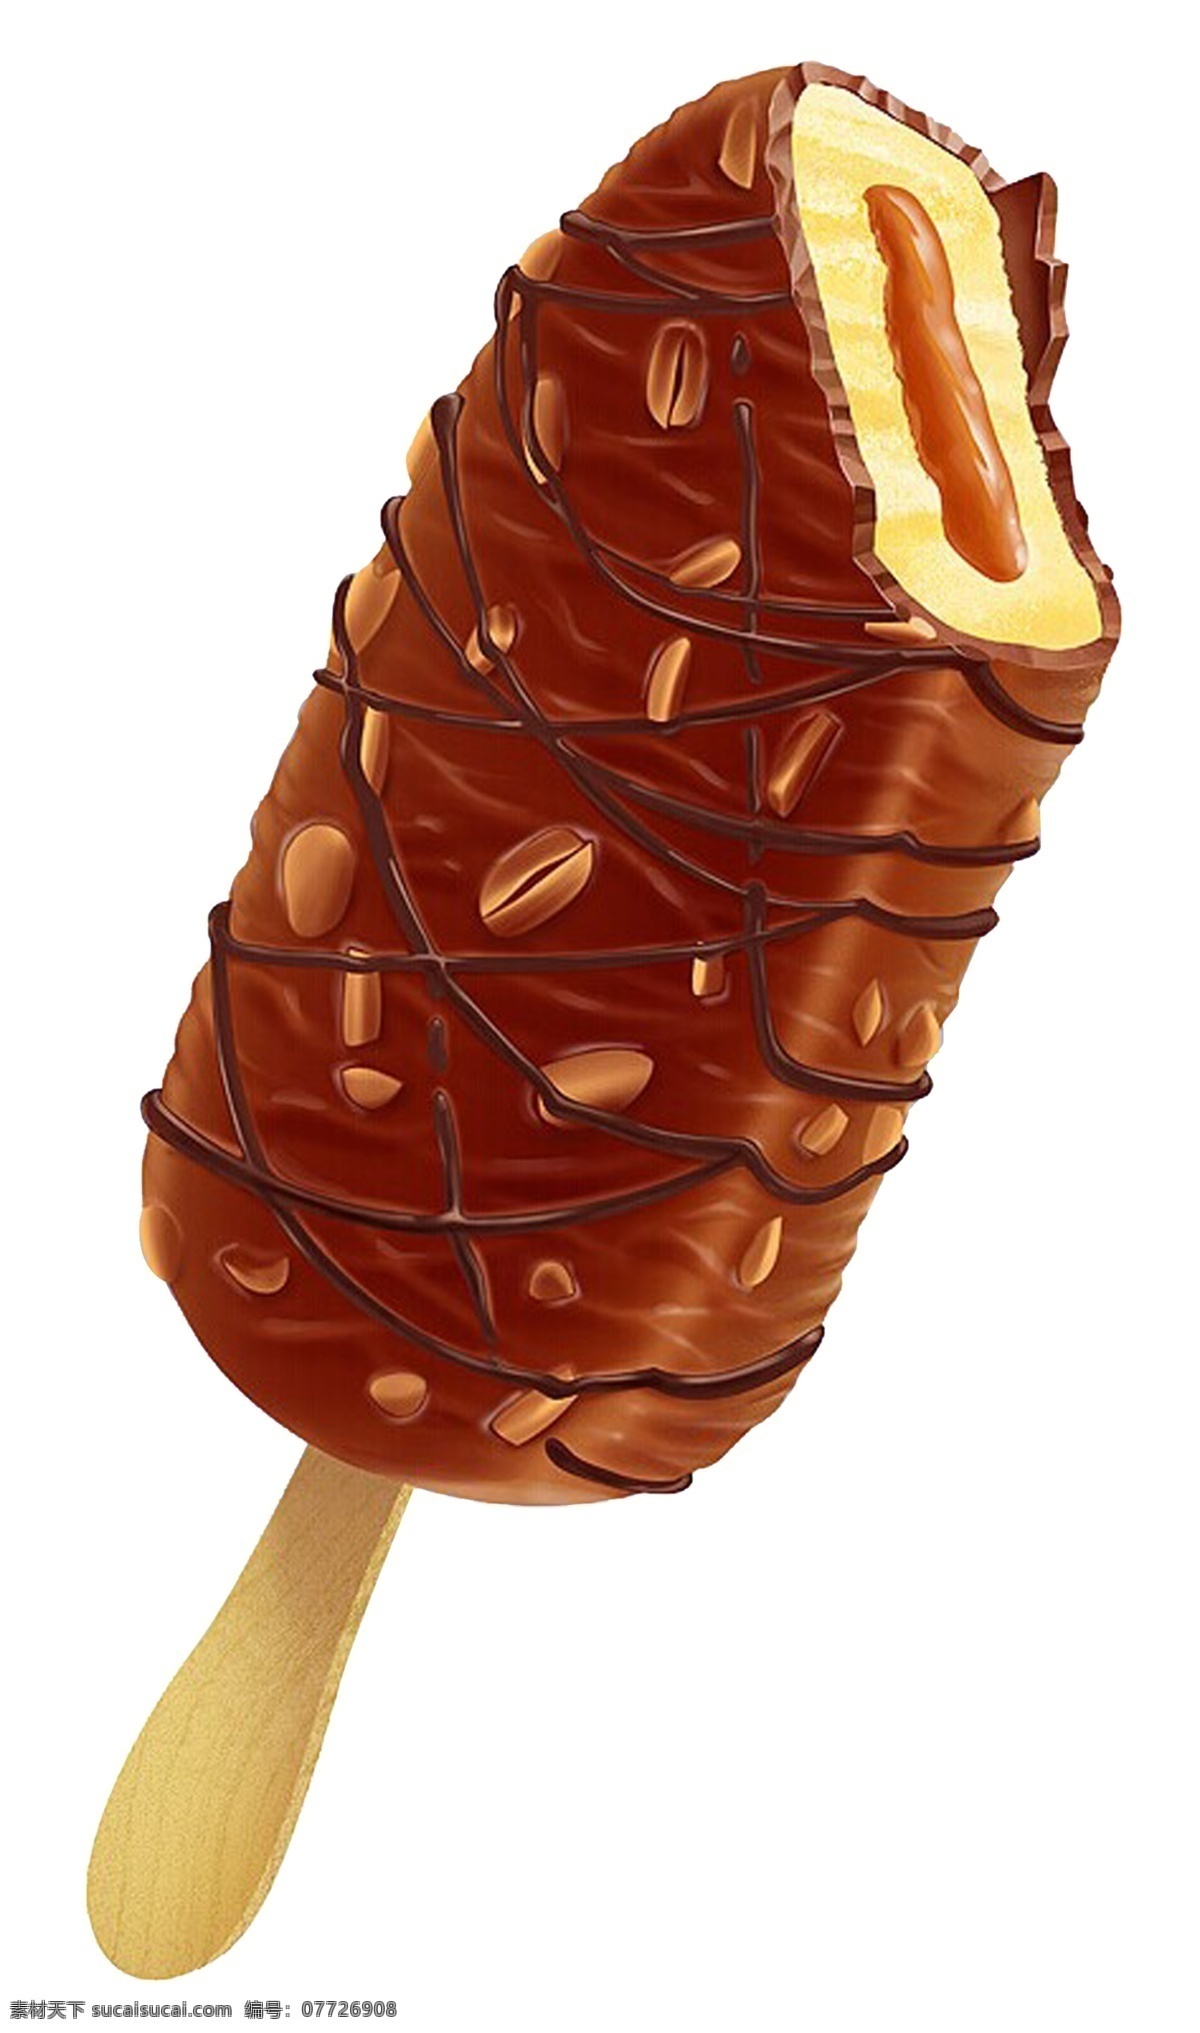 冰激凌 冰棒 雪糕 冰淇淋 降温 防暑 老冰棒 冰块 巧克力冰棒 夹心冰棒 分层